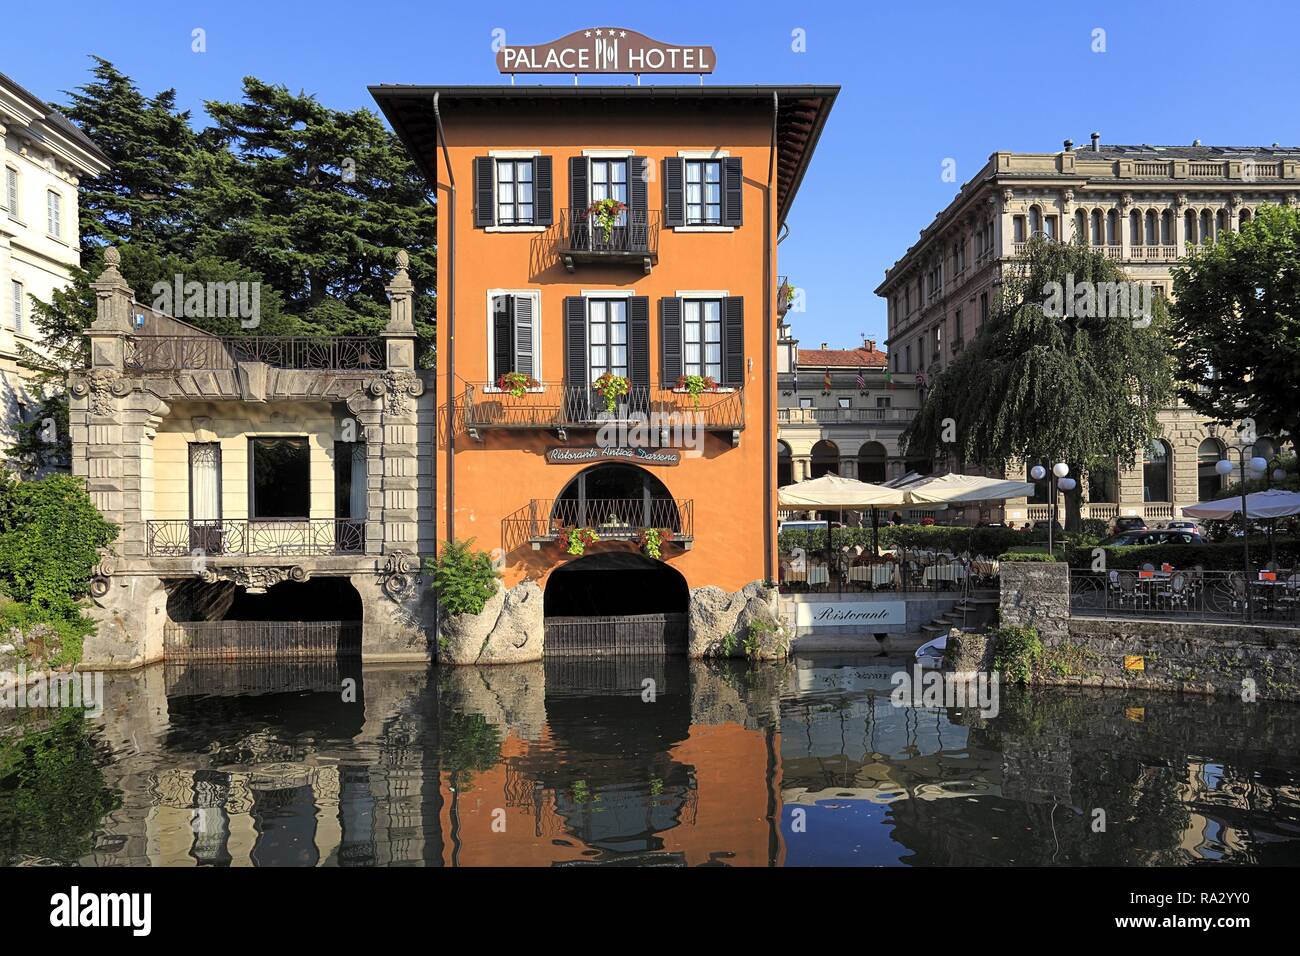 Wlochy - Lombardie - Como - panorama miasta przy nabrzezu jeziora como o zachodzie slonca Italie - Lombardie - Como - vue panoramique de la ville par la rive de la lac de Côme au coucher du soleil Banque D'Images